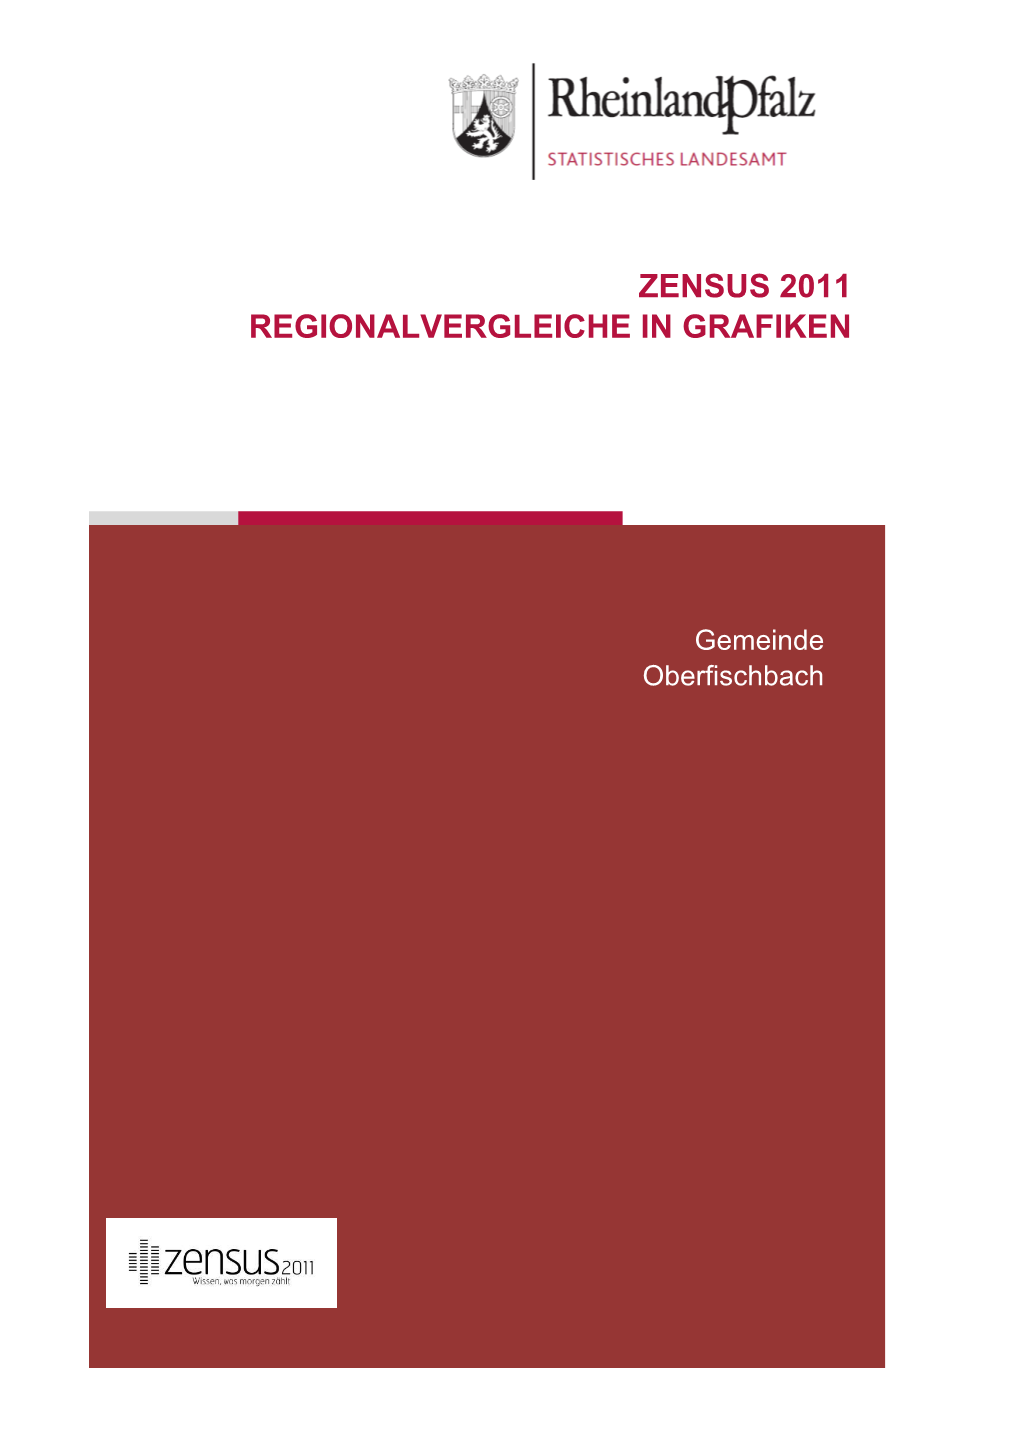 Regionalvergleiche in Grafiken Am 9. Mai 2011, Oberfischbach